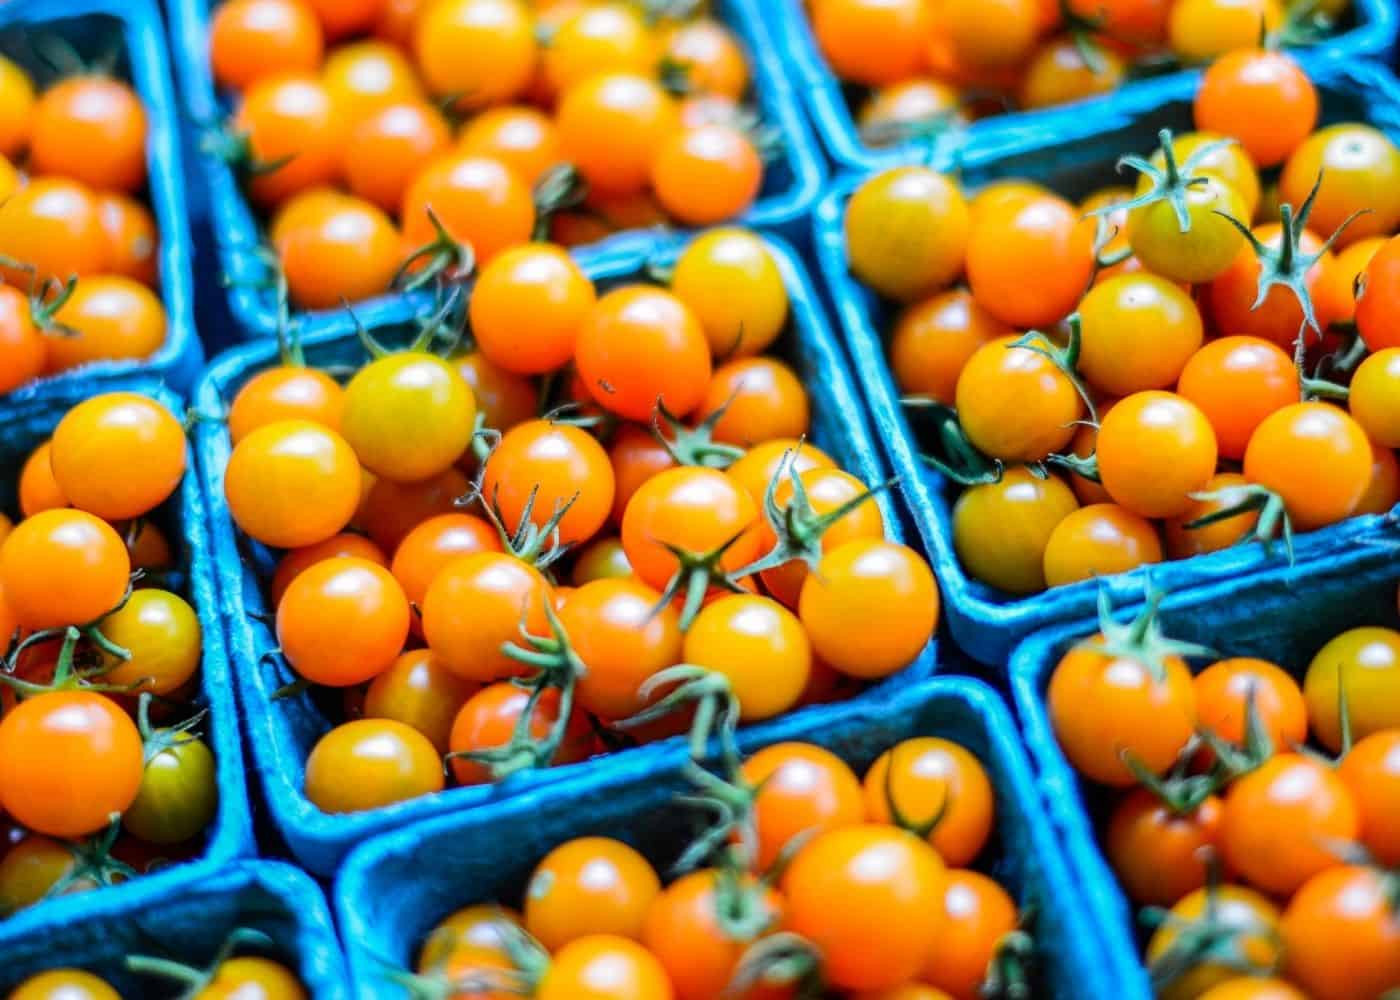 Sun sugar tomatoes at market